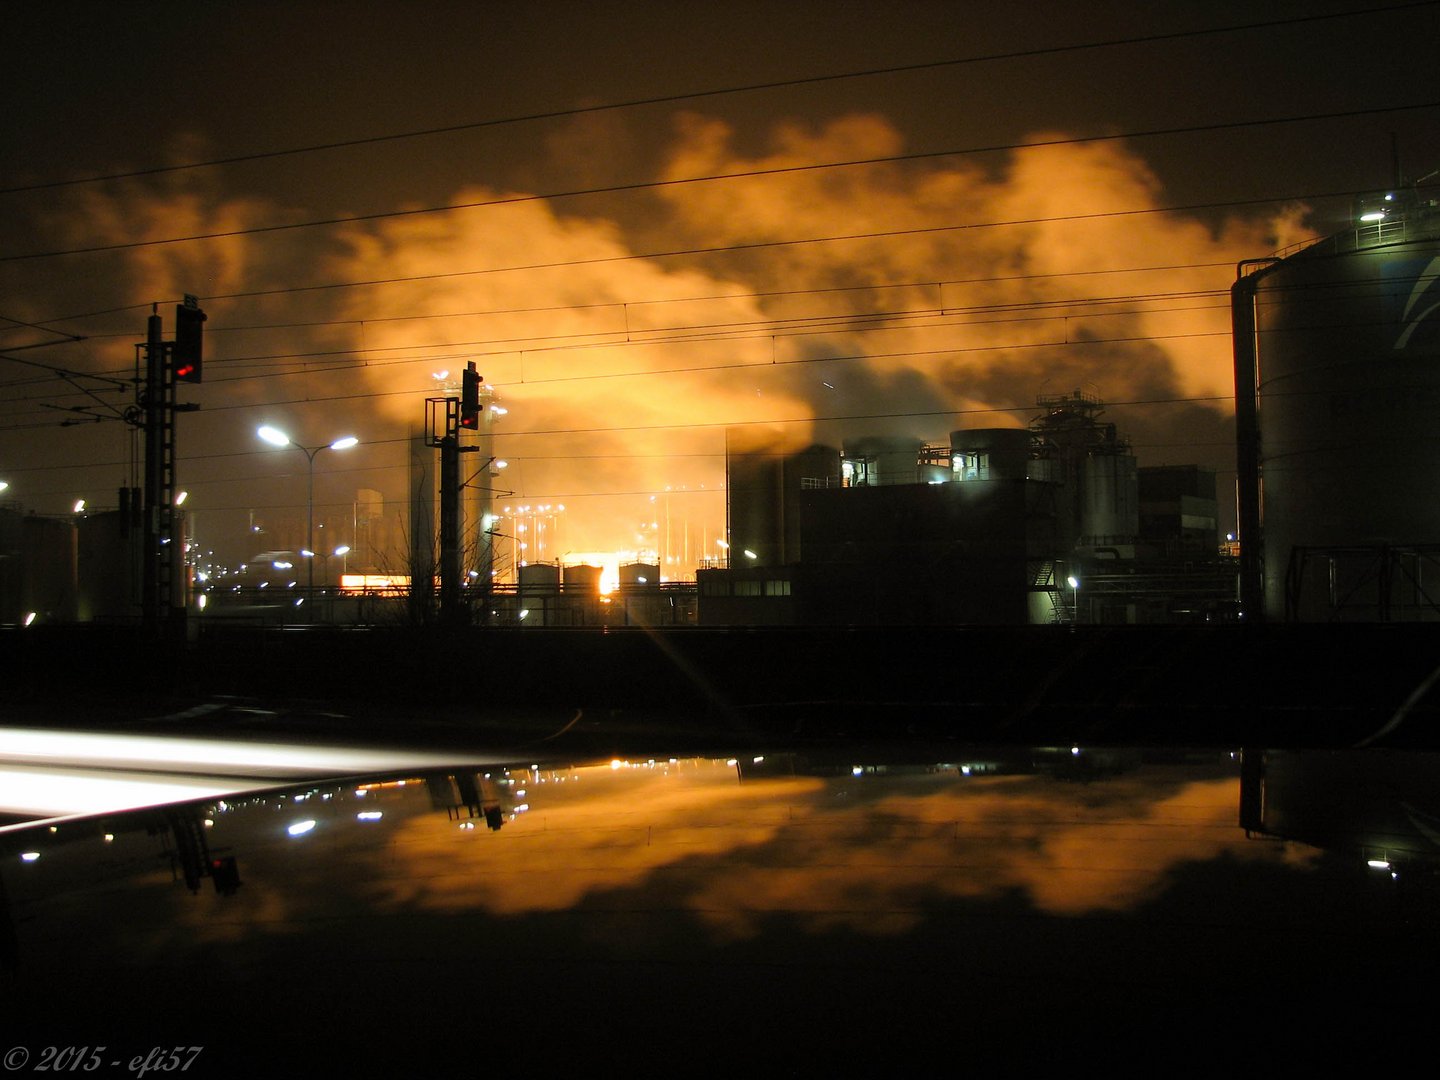 Raffinerie in Flammen